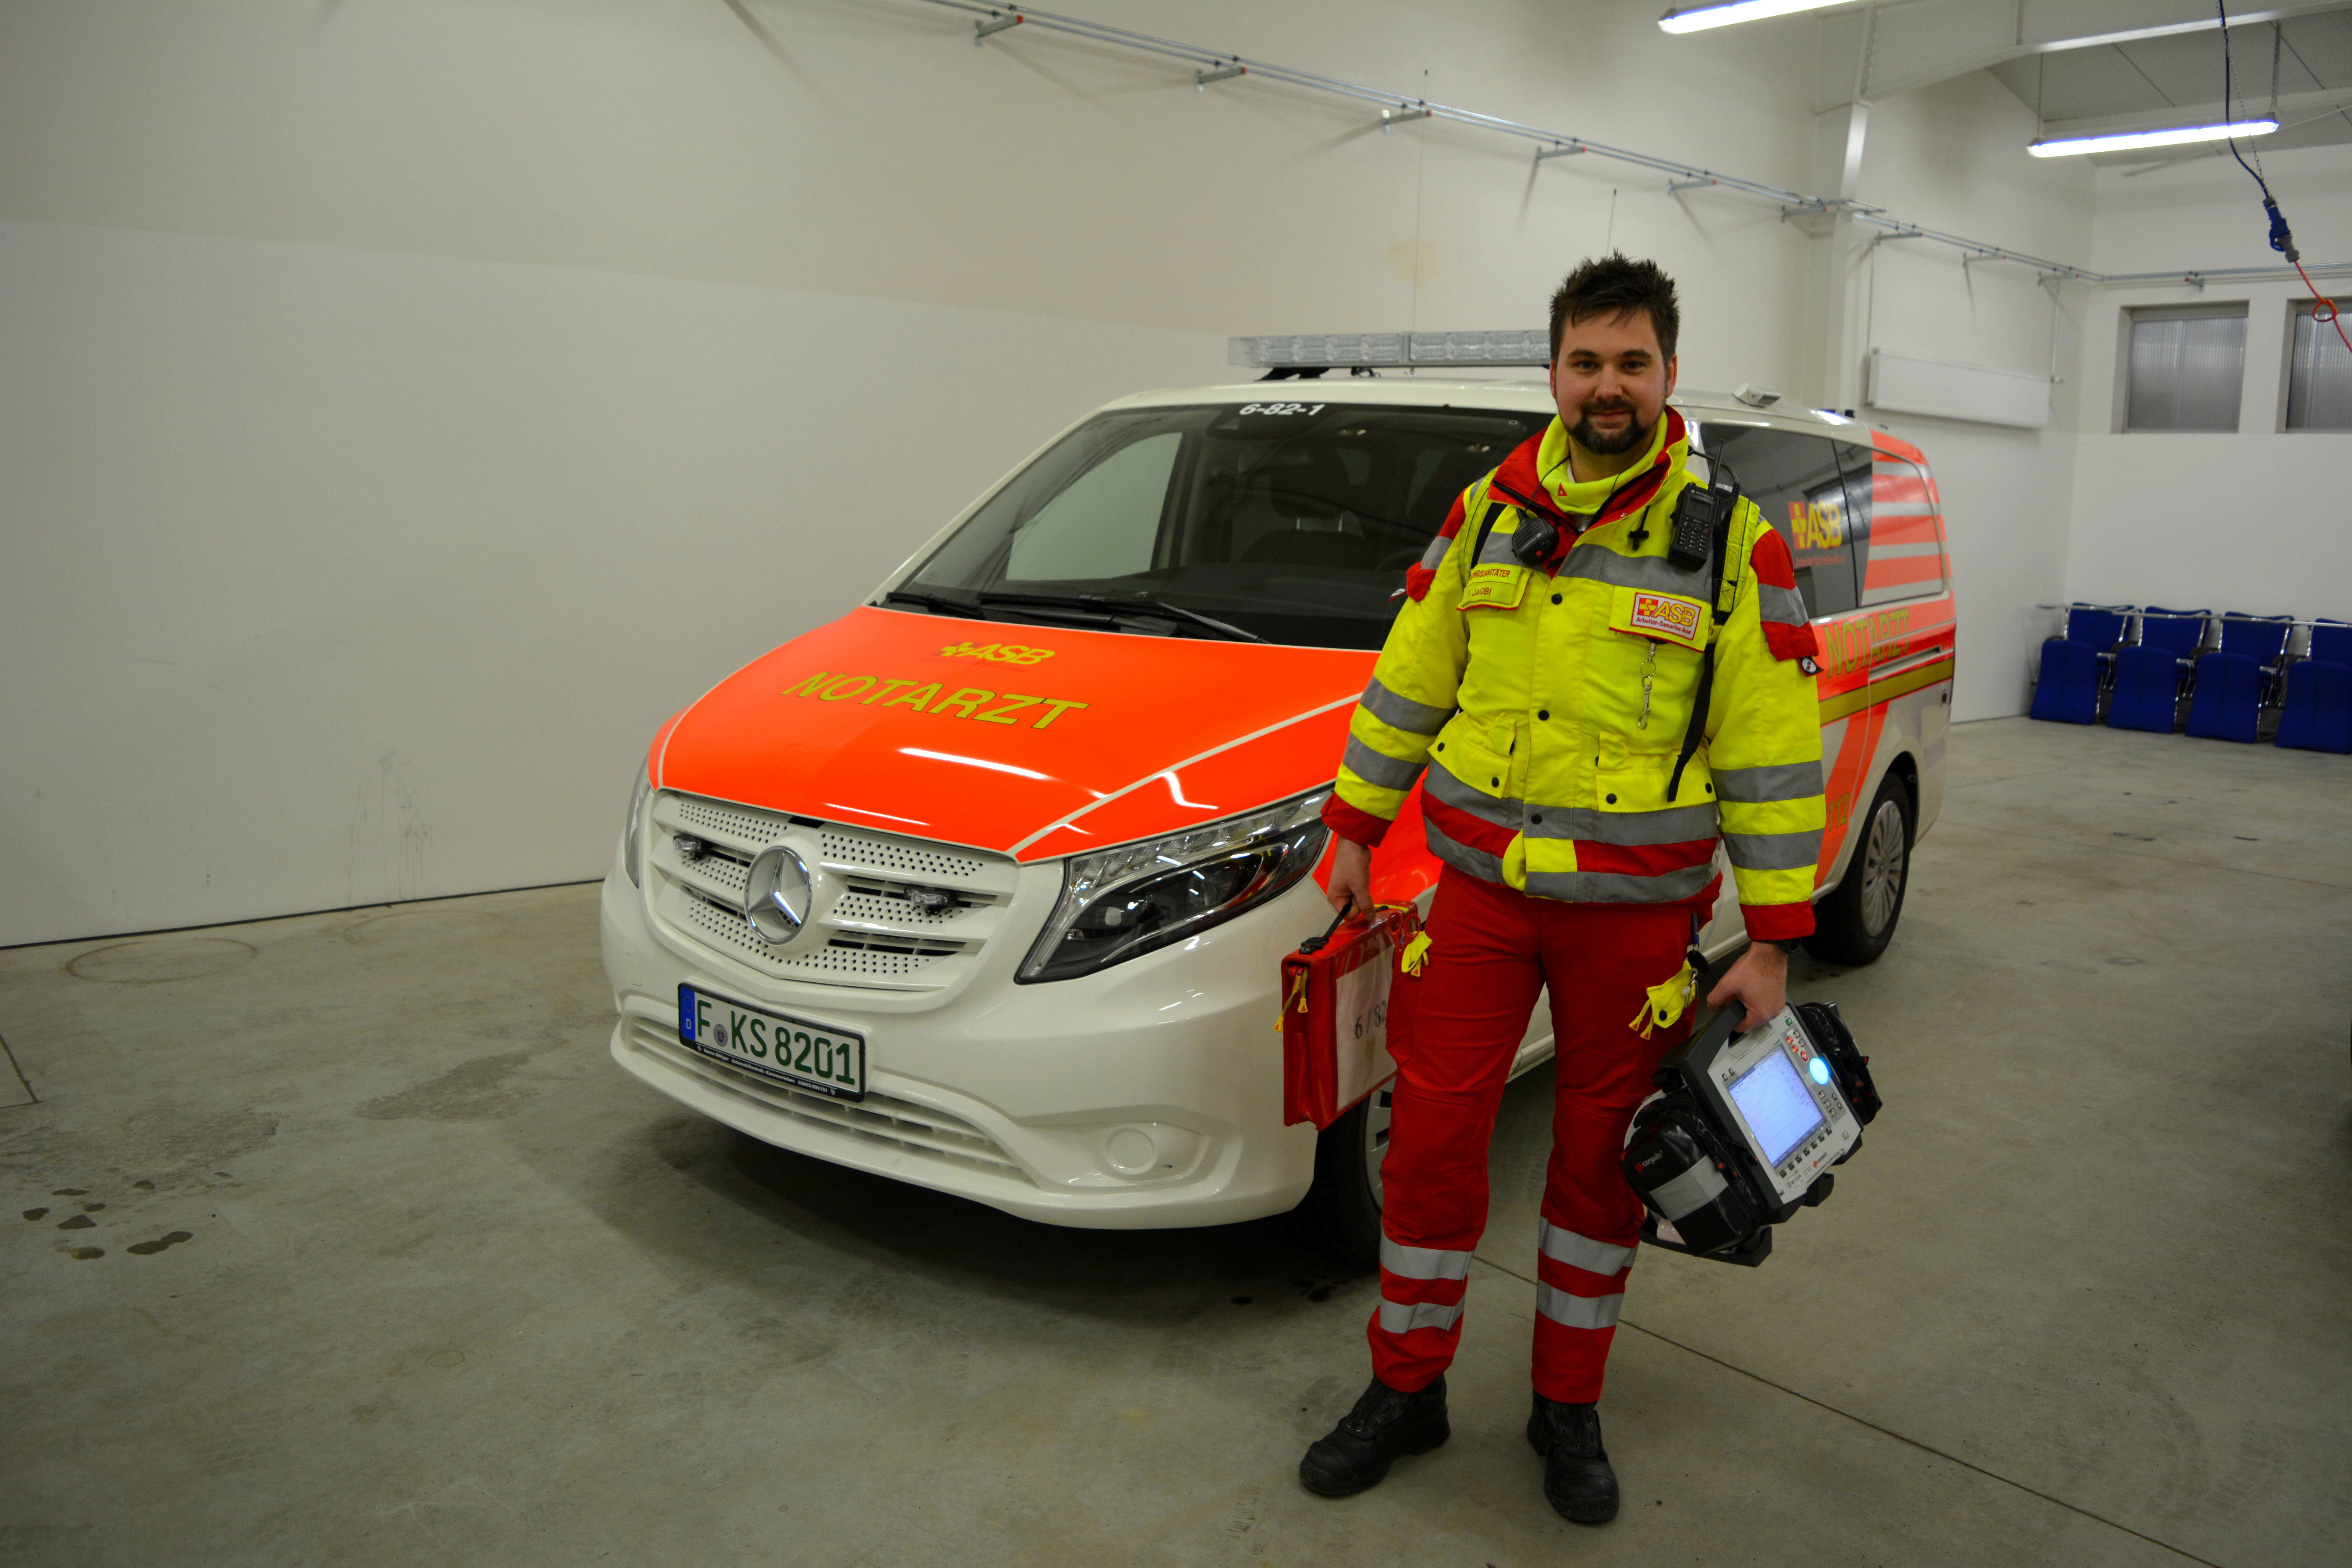 Neues Notarzt-Einsatzfahrzeug in Dienst gestellt: Interview mit Rettungssanitäter Marvin Jakobi